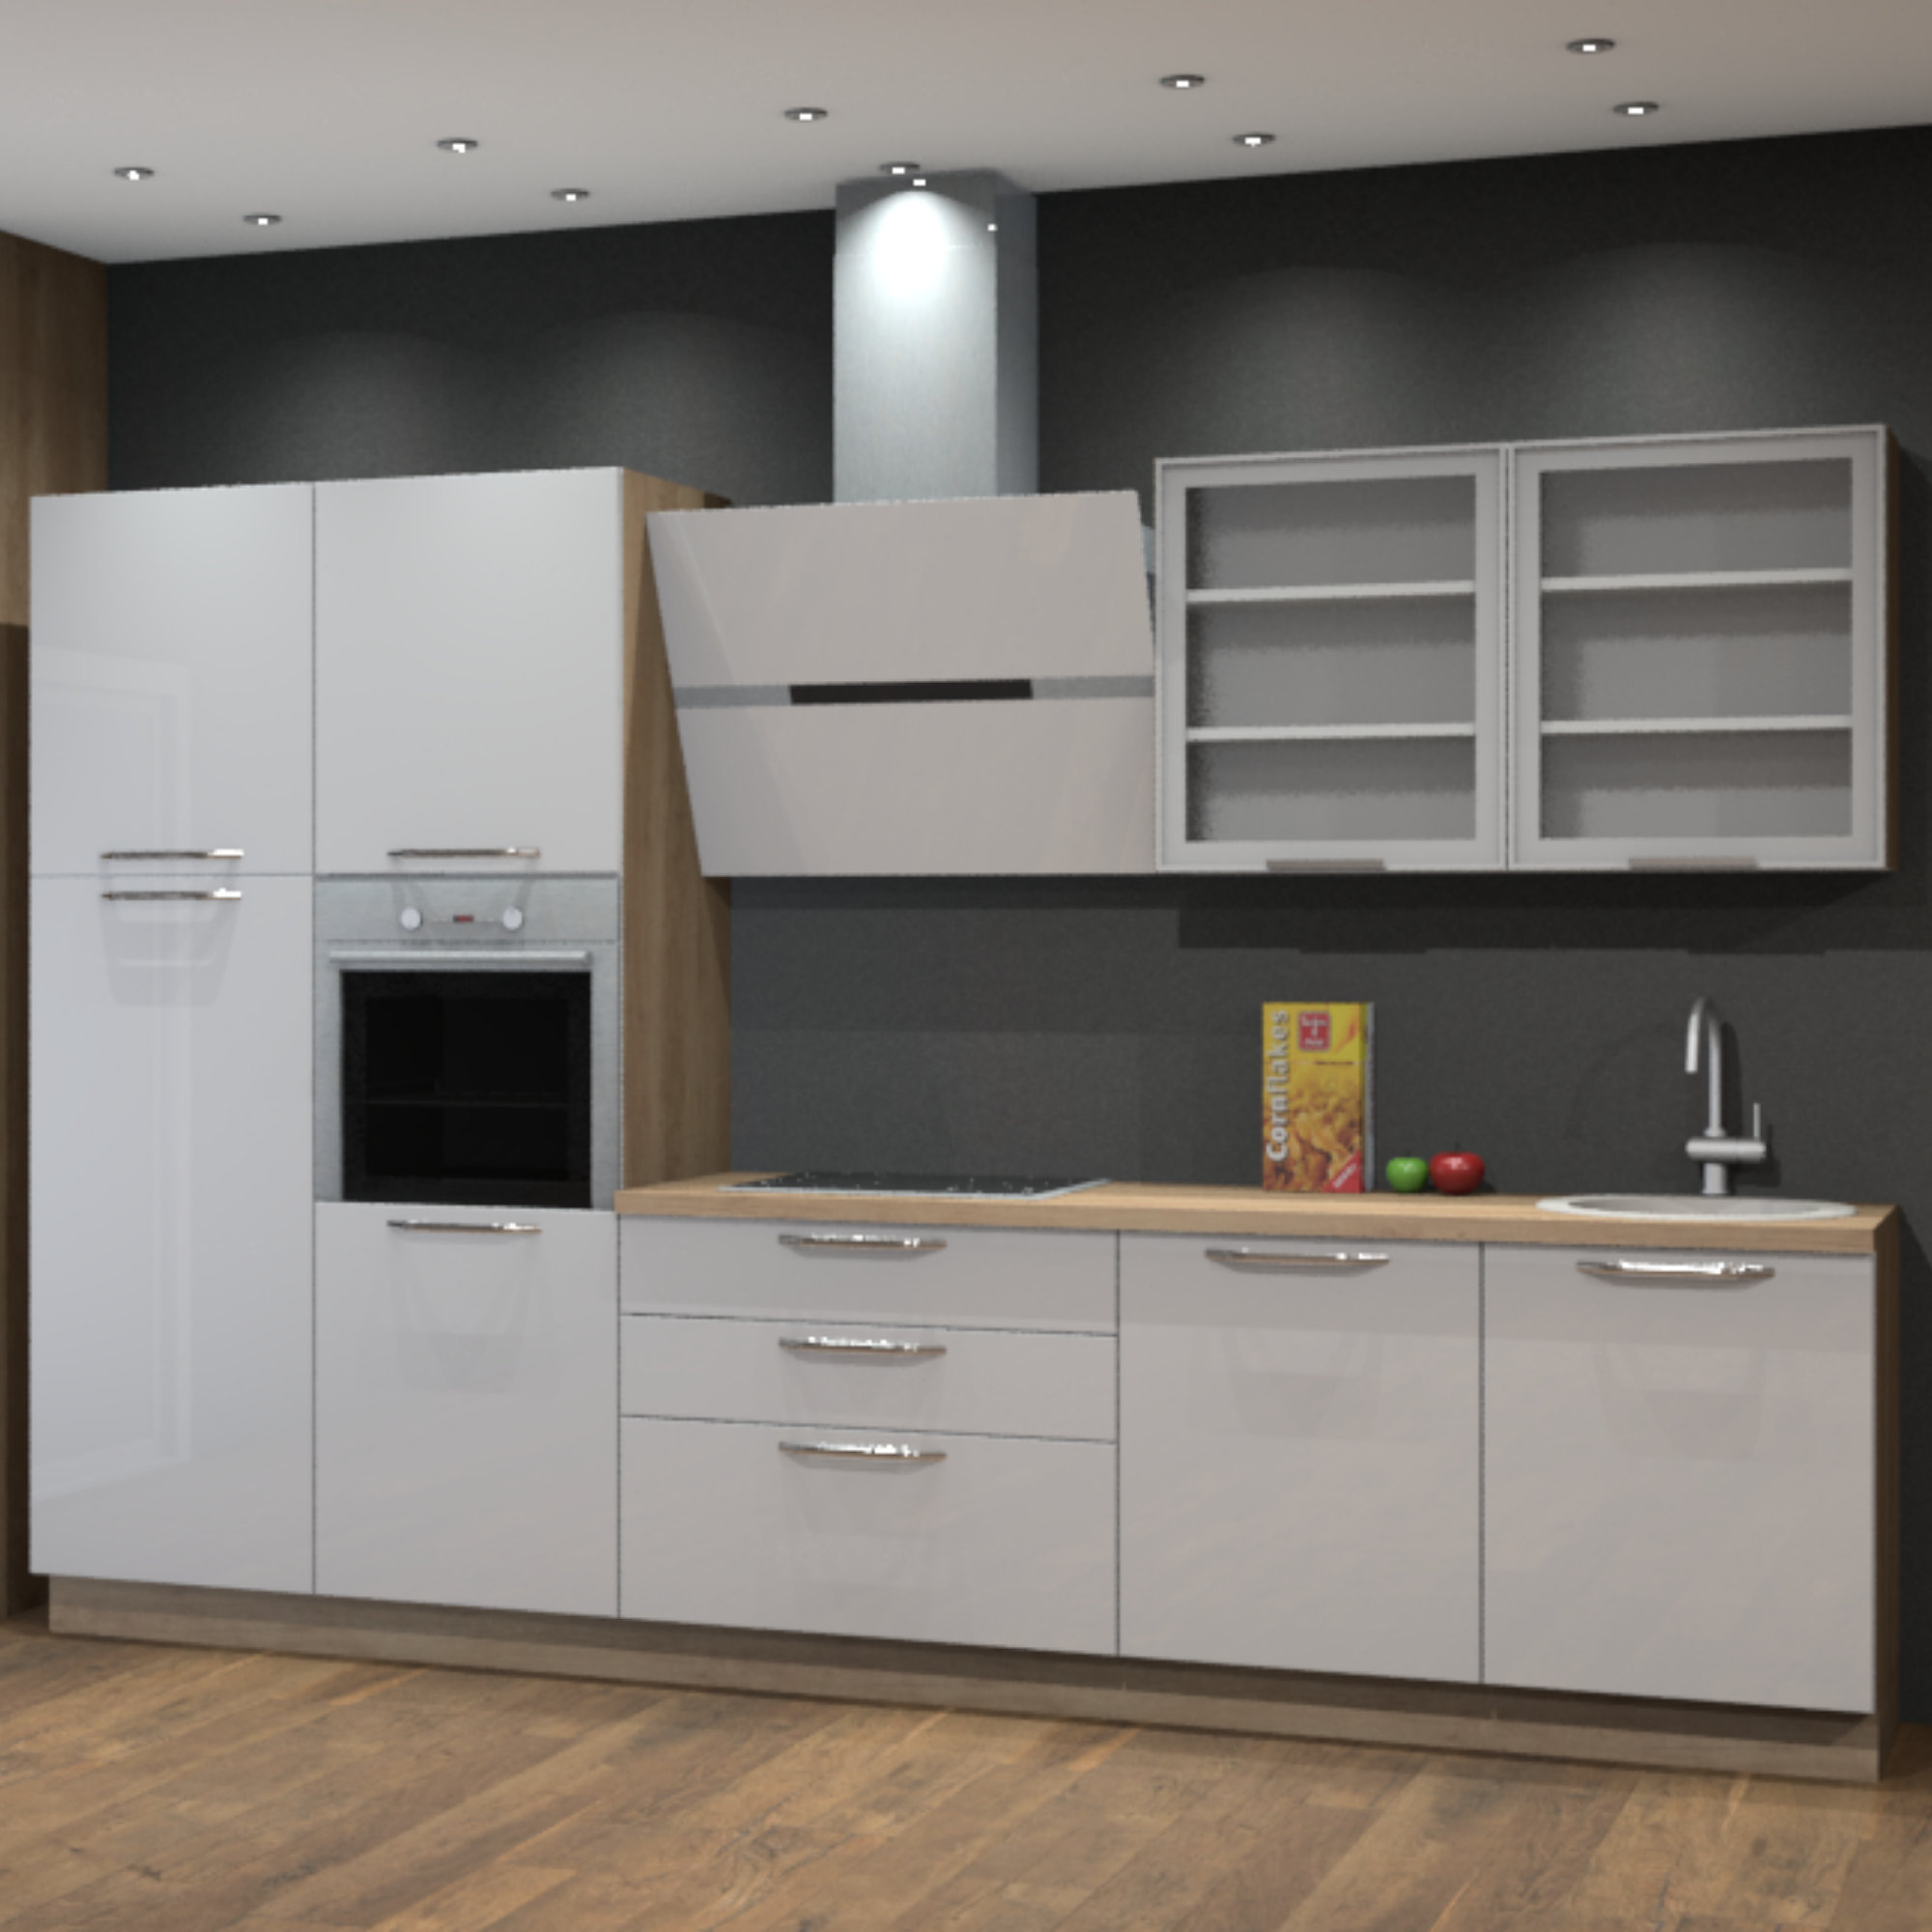 https://assets.wfcdn.com/im/40946257/compr-r85/2057/205758145/12992-w-x-86-h-white-kitchen-cabinet-set.jpg